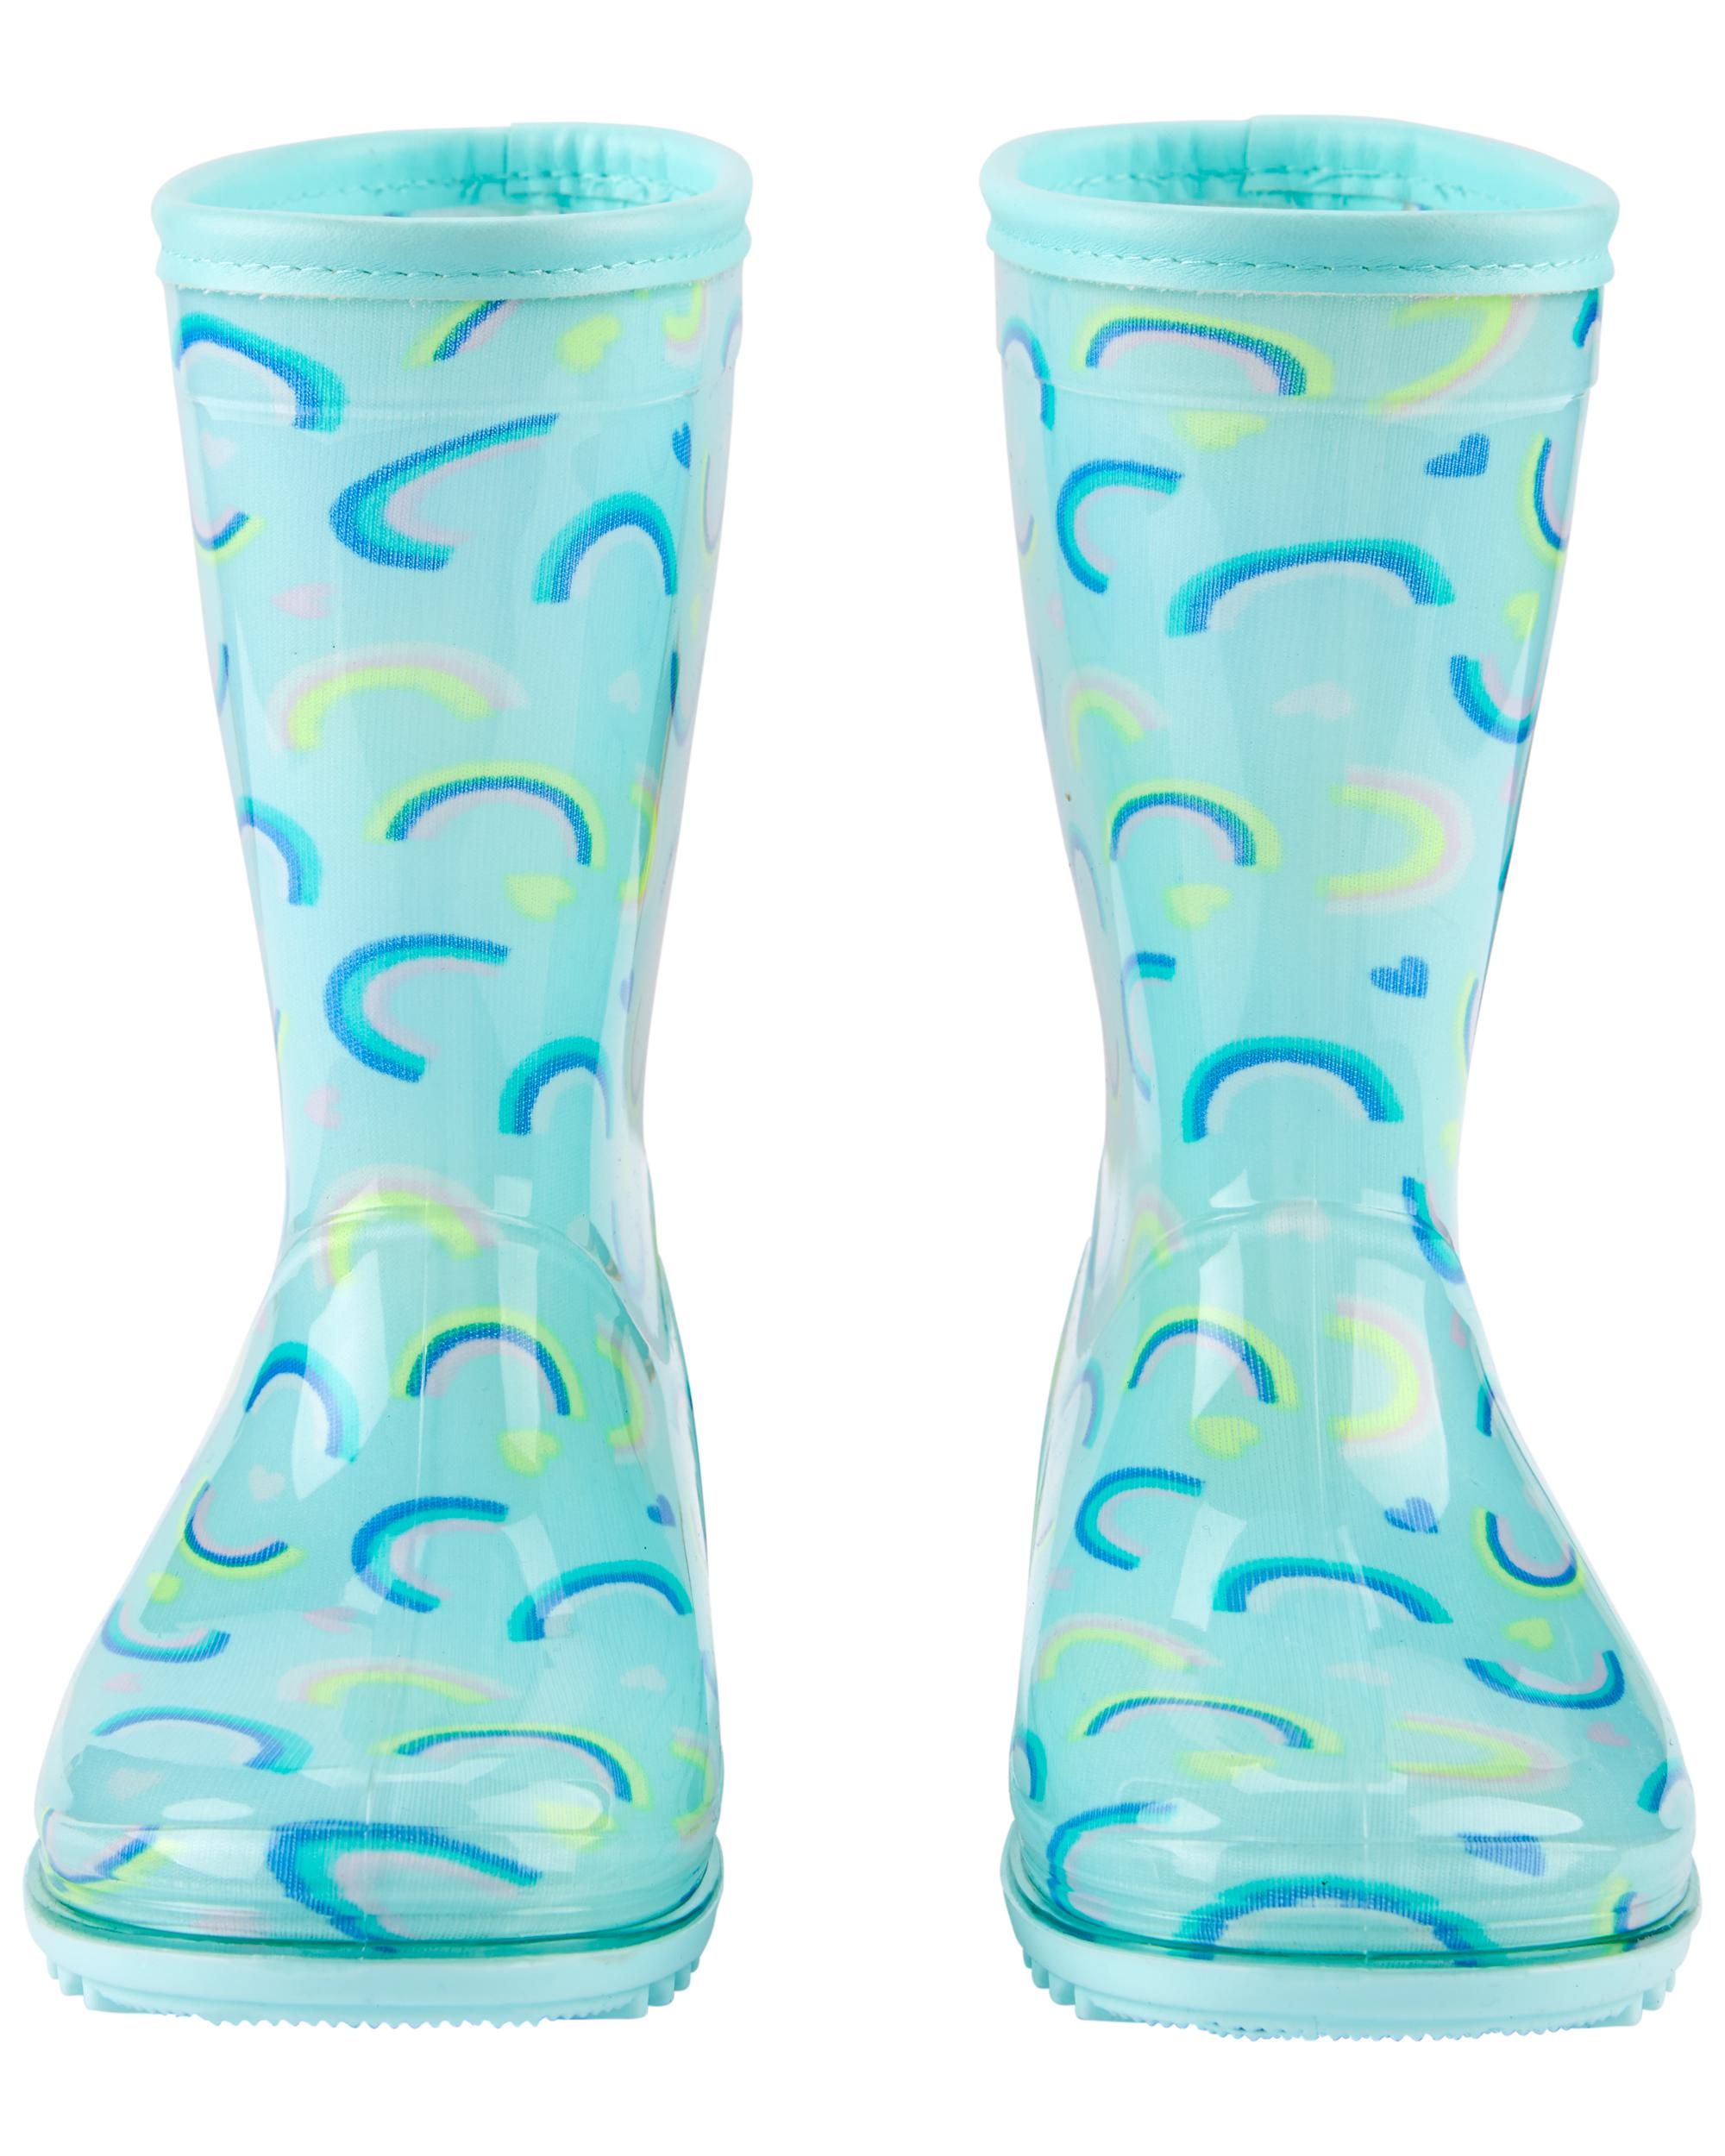 Rainbow Rain Boots